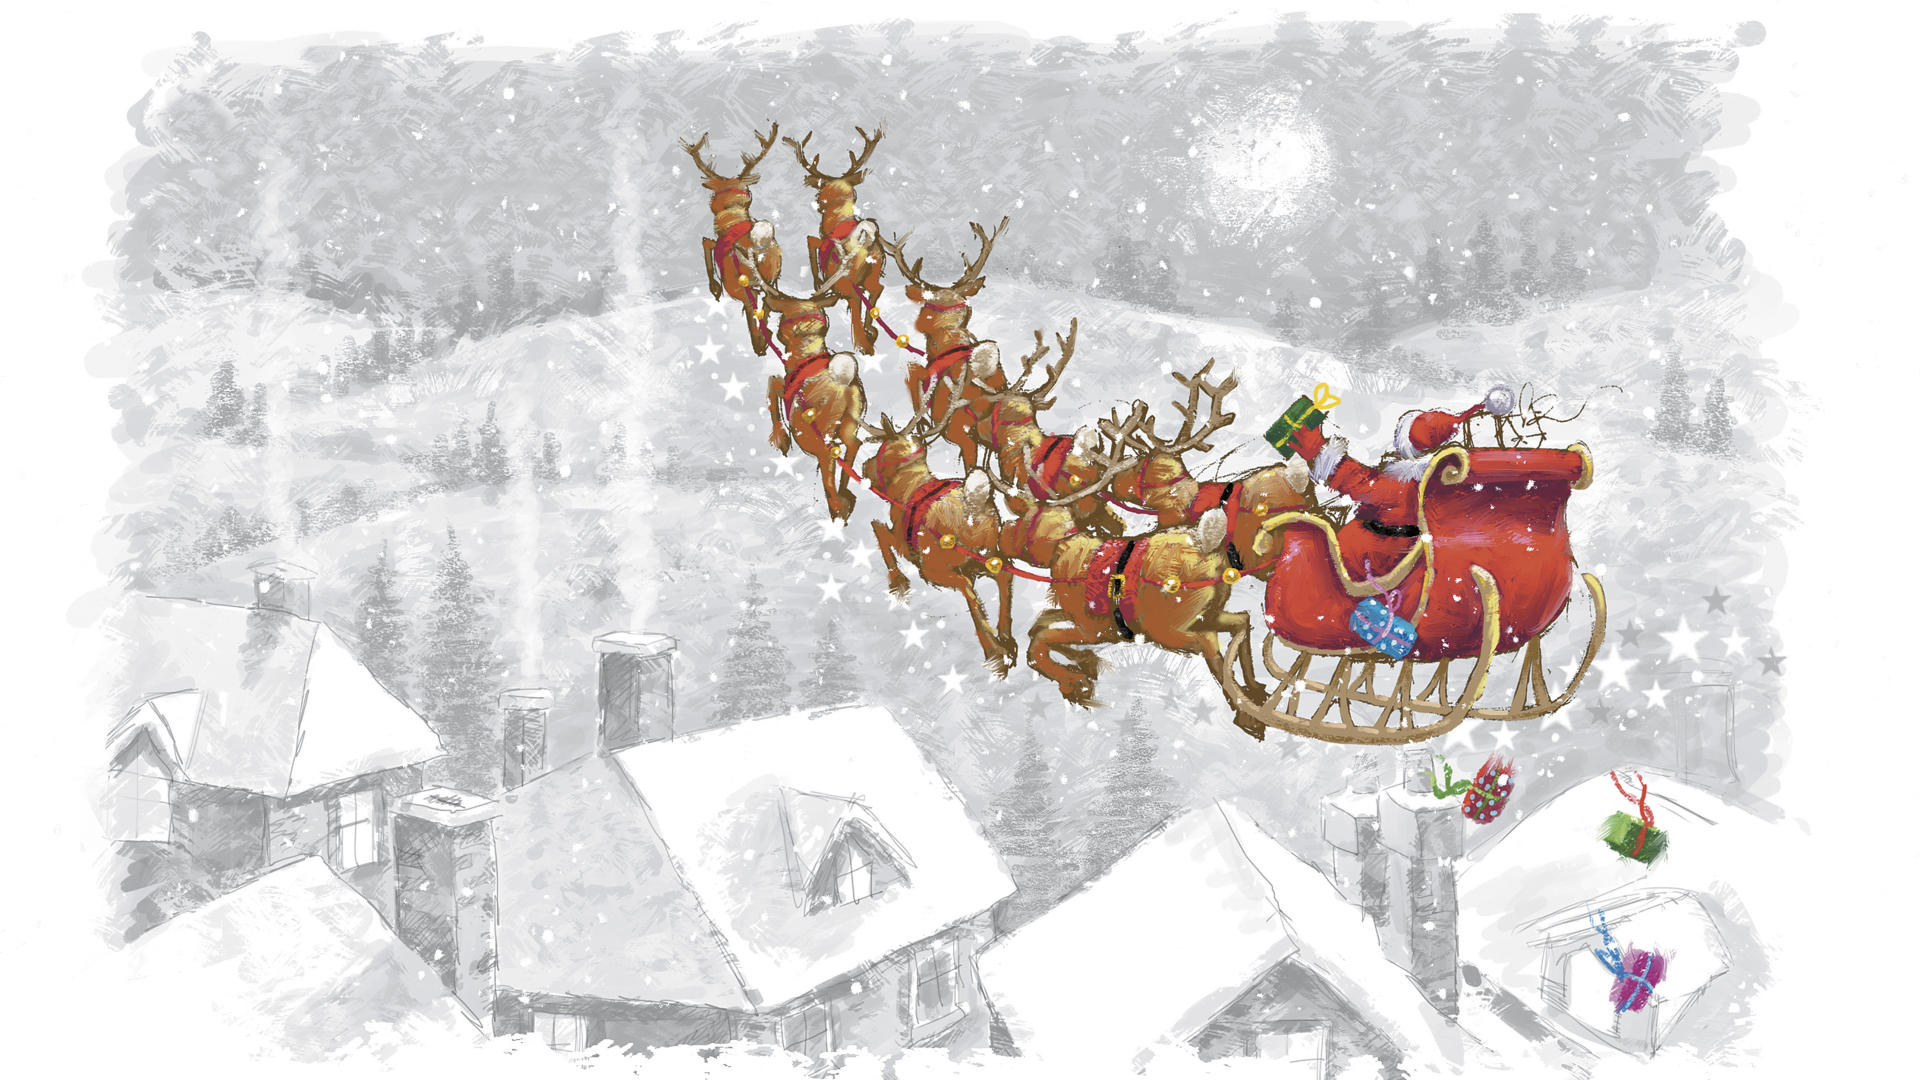 de santa claus, sleigh, reindeer, at home wallpaper forwallpaper.com